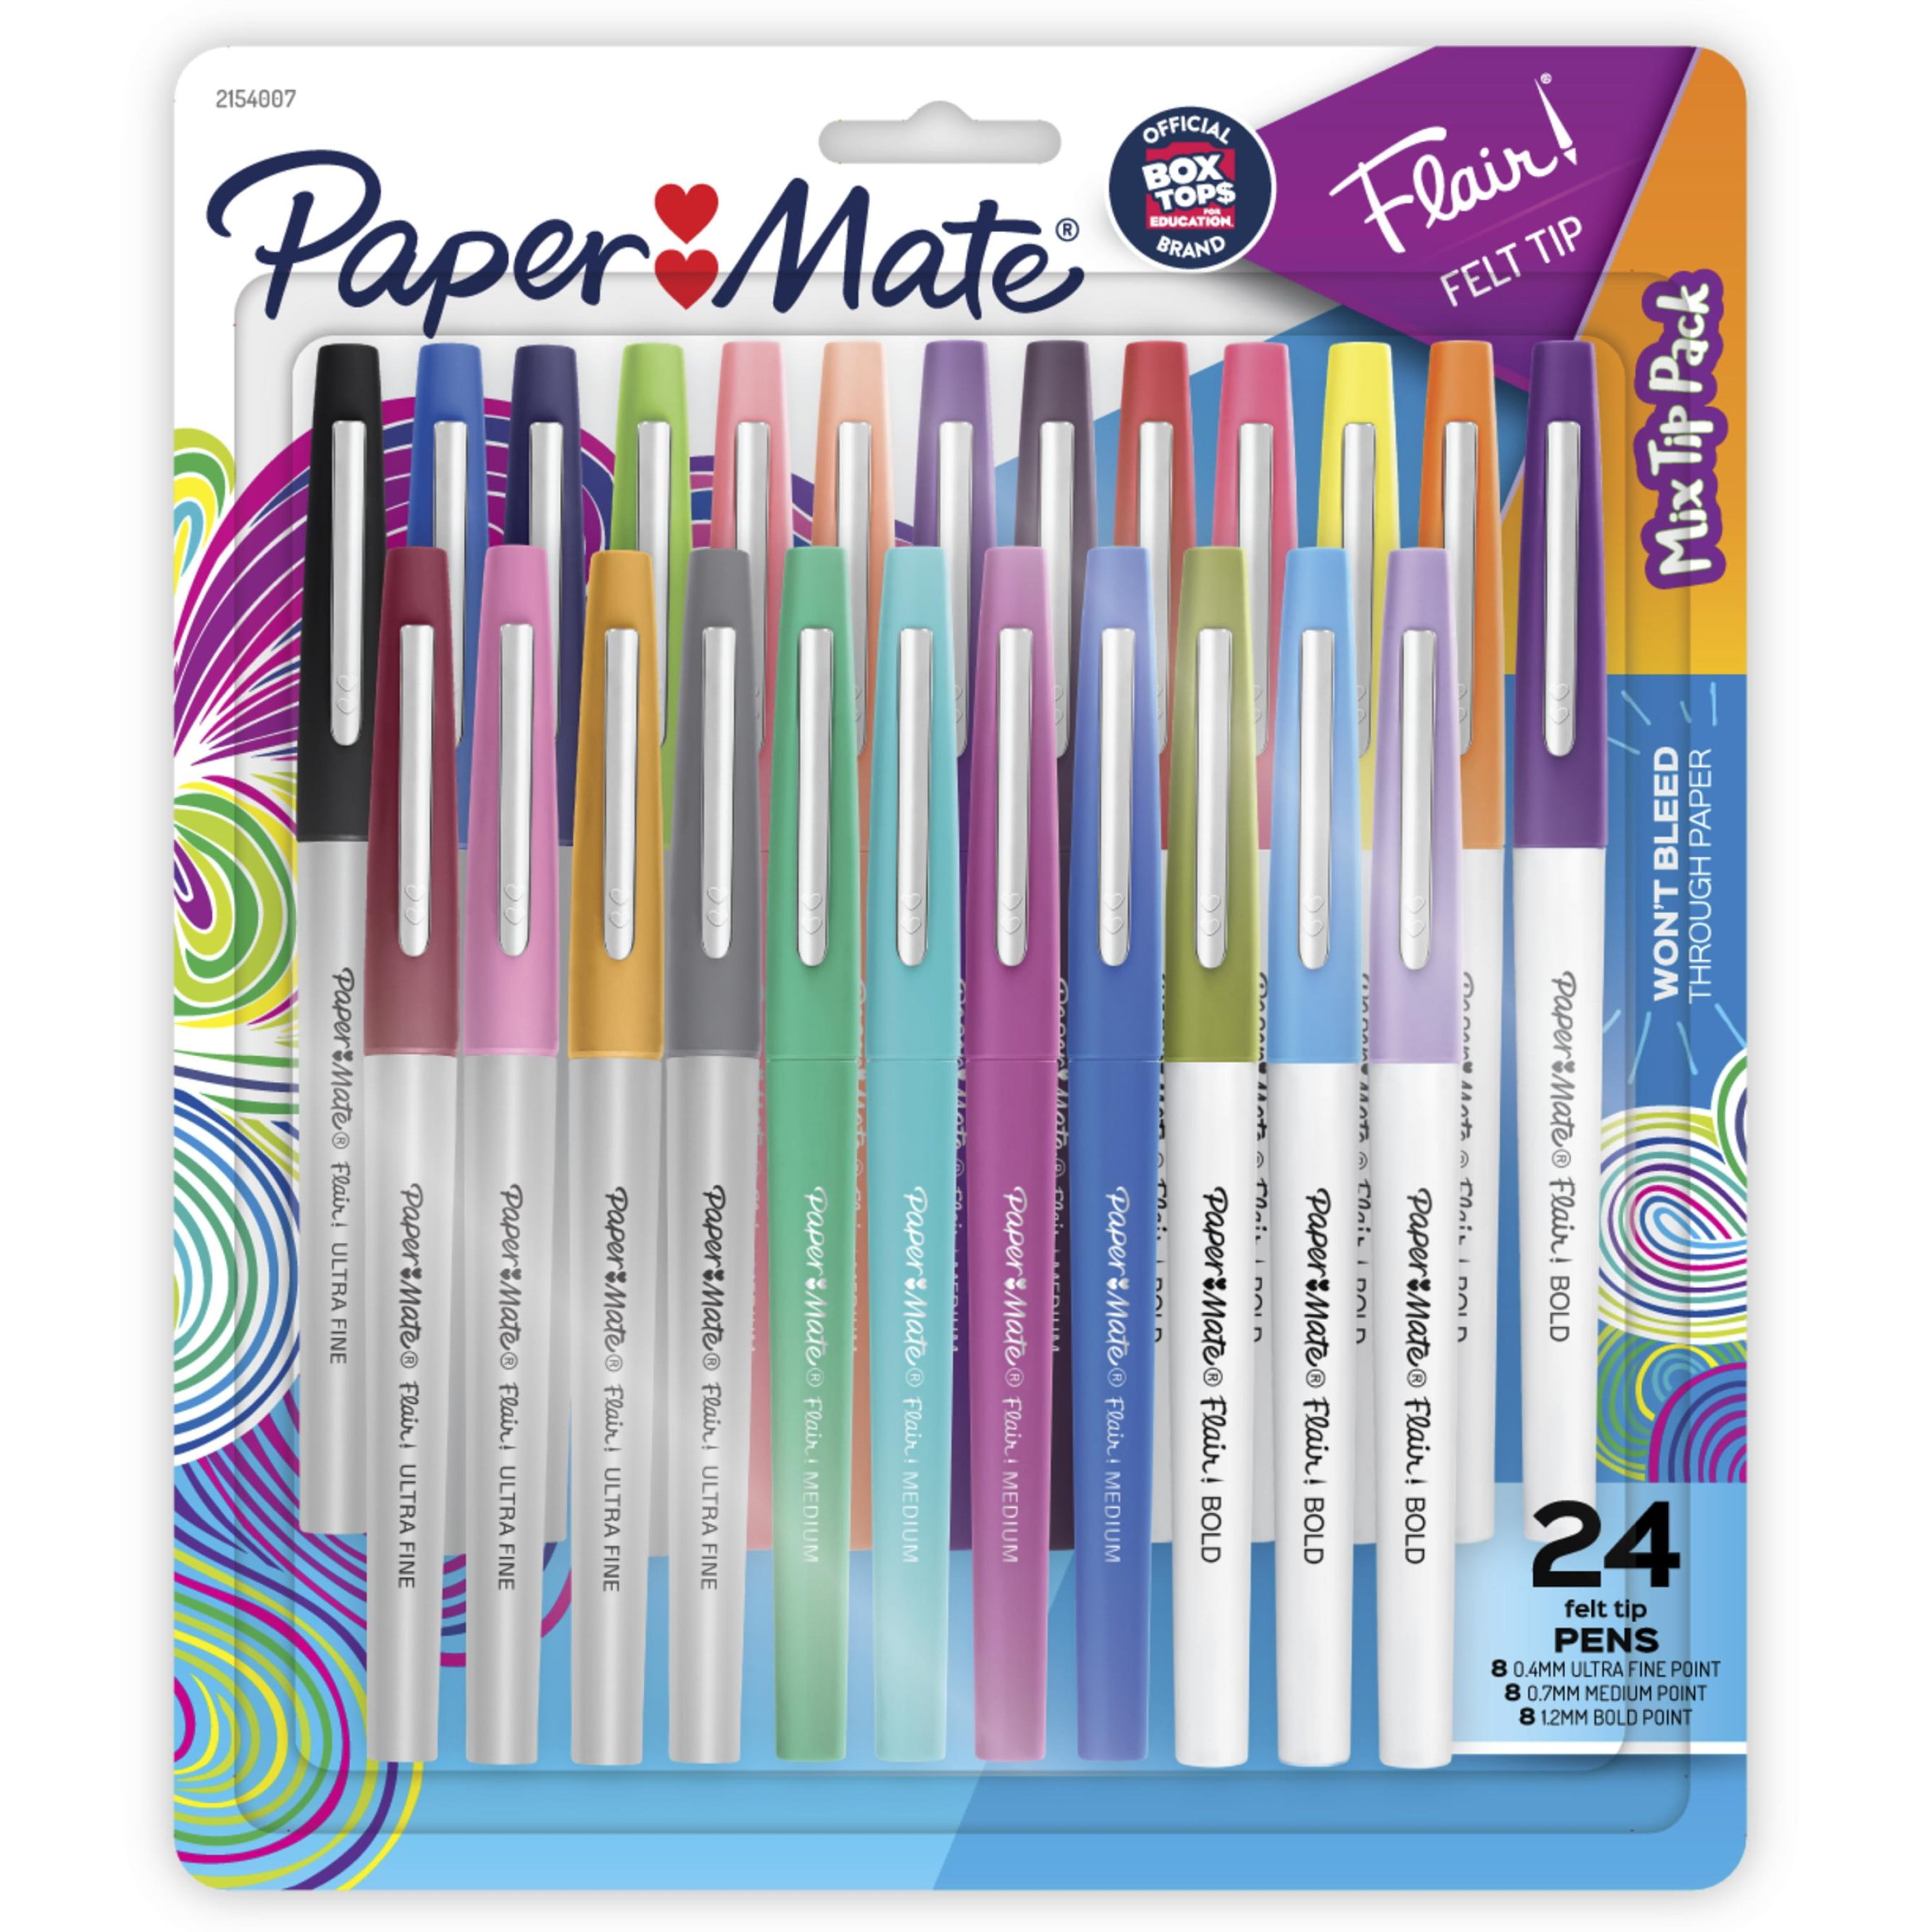 Paper Mate Flair Ultra Fine Candy Pop Felt Tip Pen - Zerbee